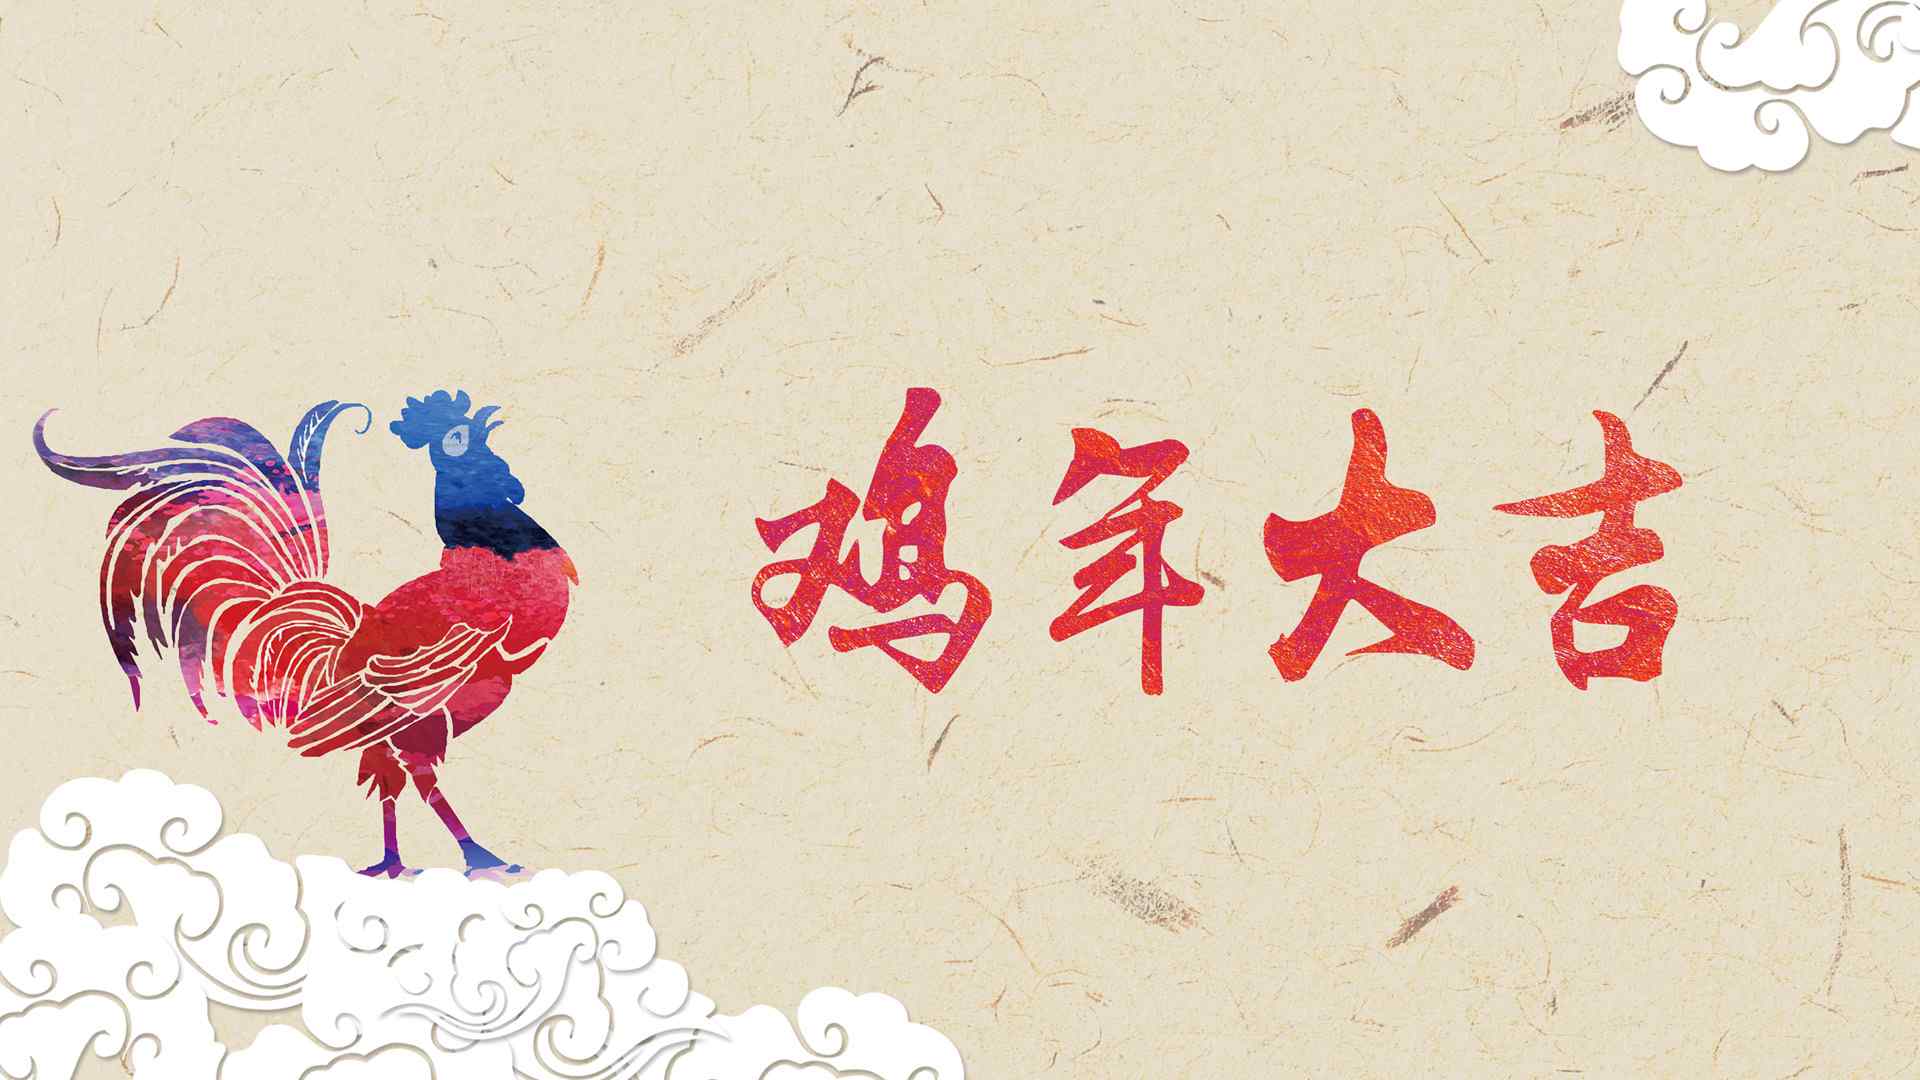 2017鸡年大吉素材图片高清壁纸